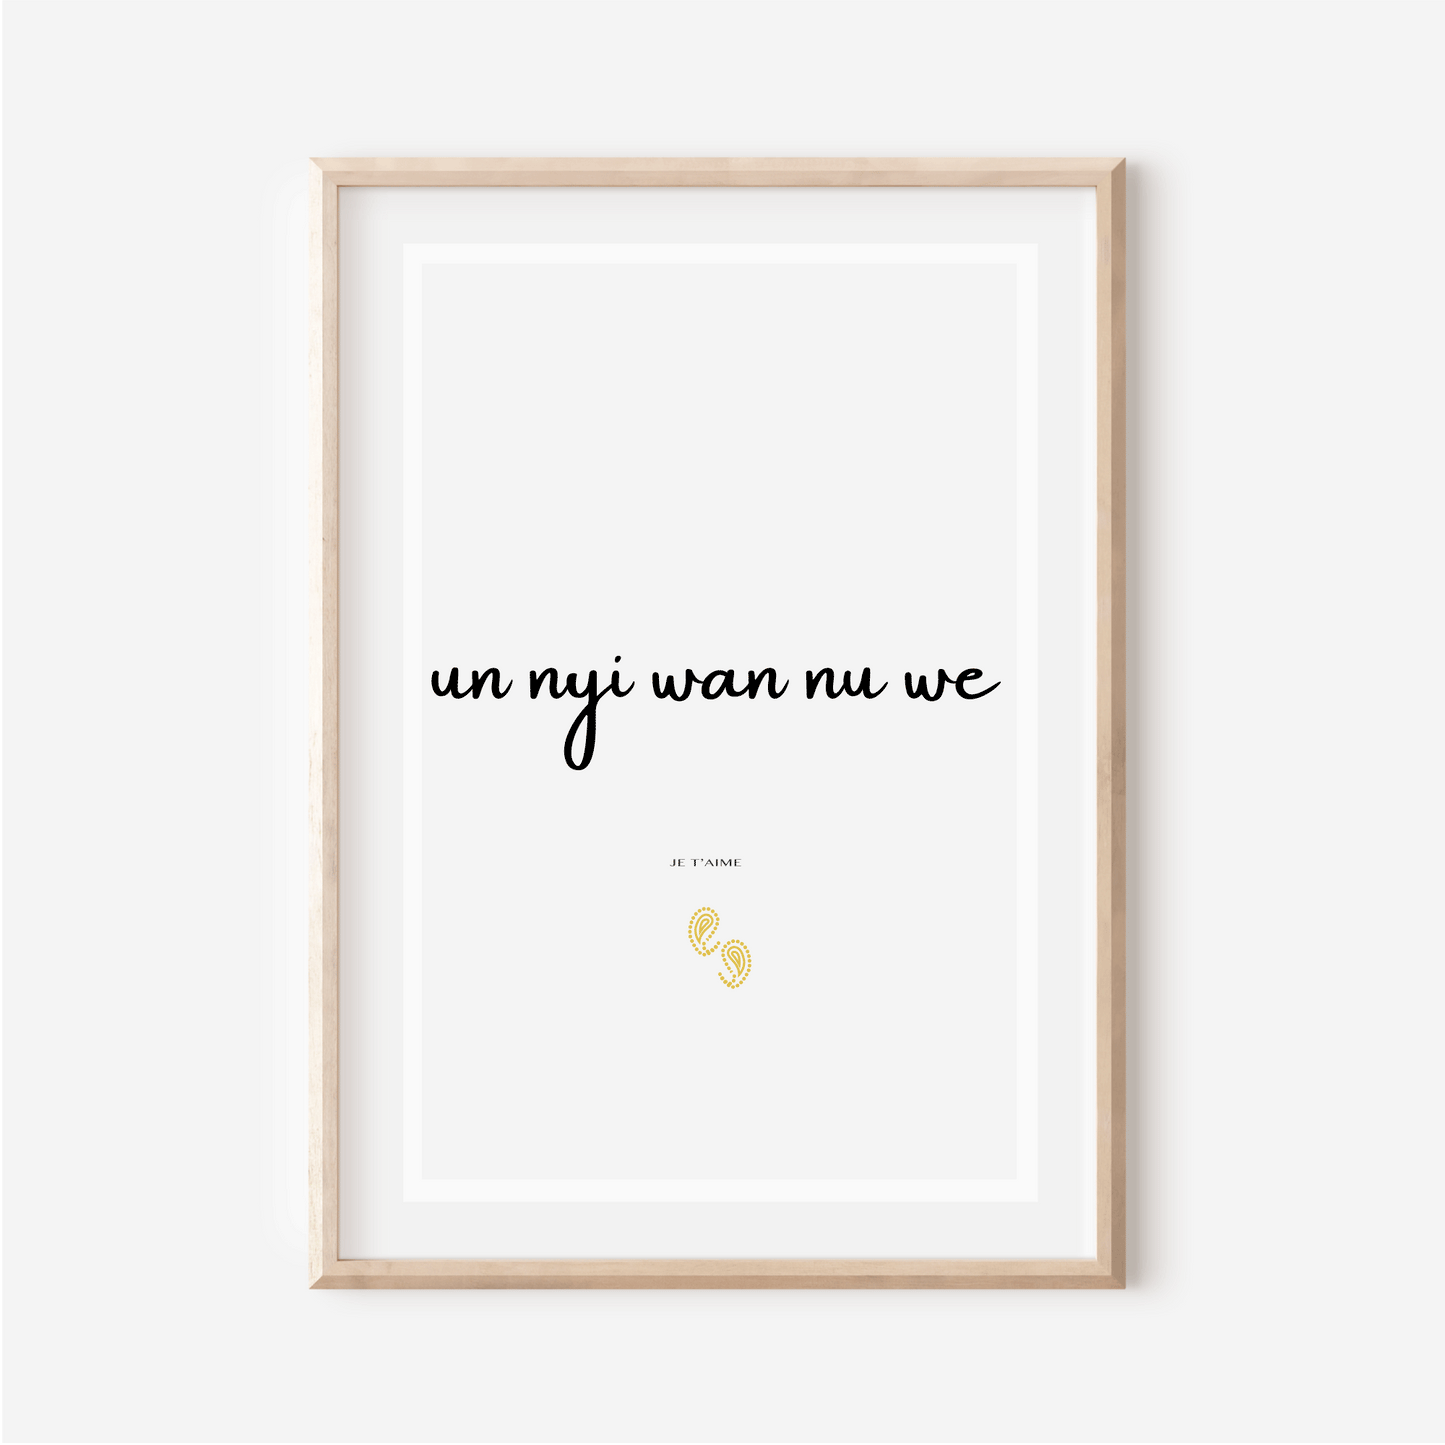 Affiche "Je t aime" en Fongbe - "Un nyi wan nu we" - 30x40 cm